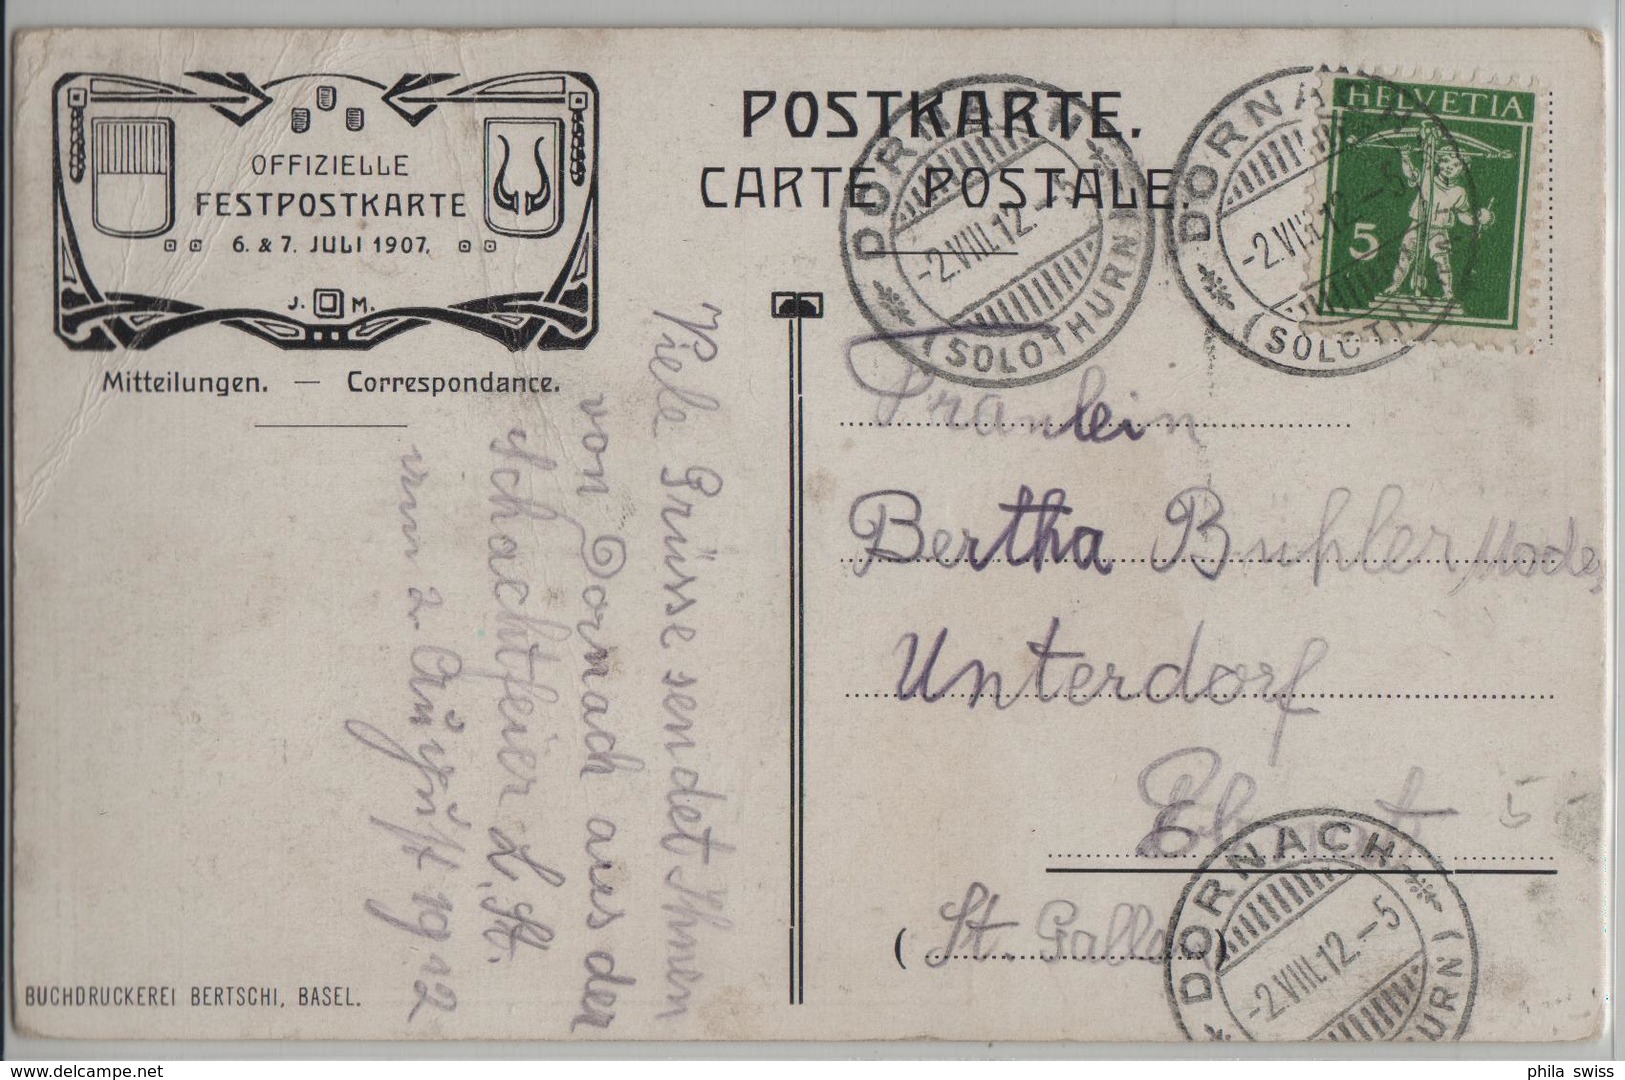 Schlossruine Dornach - Innenansicht, Totalansicht - Festpostkarte 1907 - Dornach